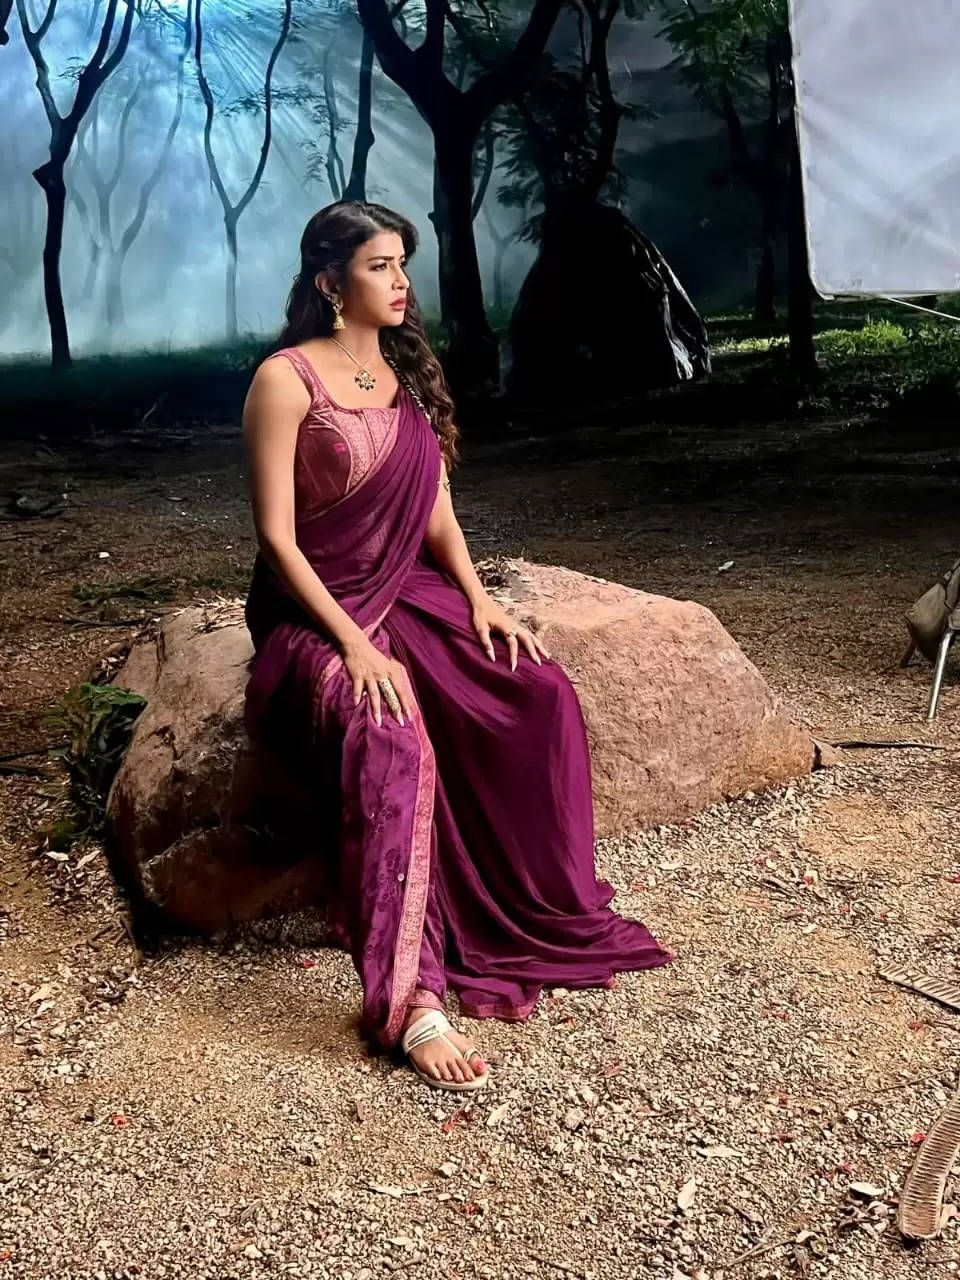 अभिनेत्री लक्ष्मी मांचू ने डिज्नी प्लस हॉटस्टार पर अपनी आगामी वेब श्रृंखला 'यक्षिणी' पर खुलकर बात की, प्रशंसकों के लिए आगे क्या होने वाला है इसकी झलक साझा की